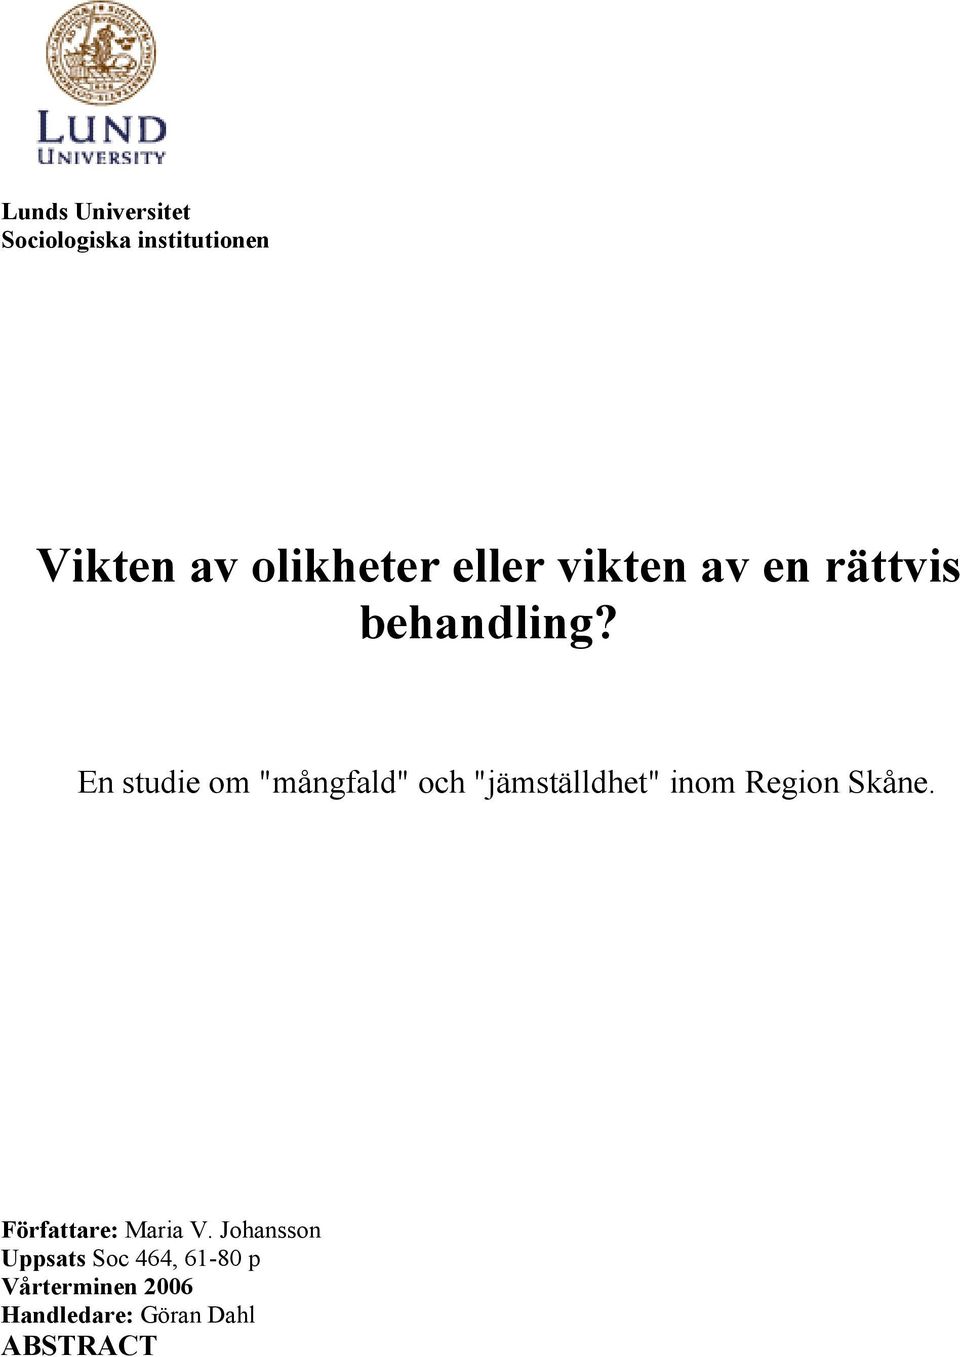 En studie om "mångfald" och "jämställdhet" inom Region Skåne.